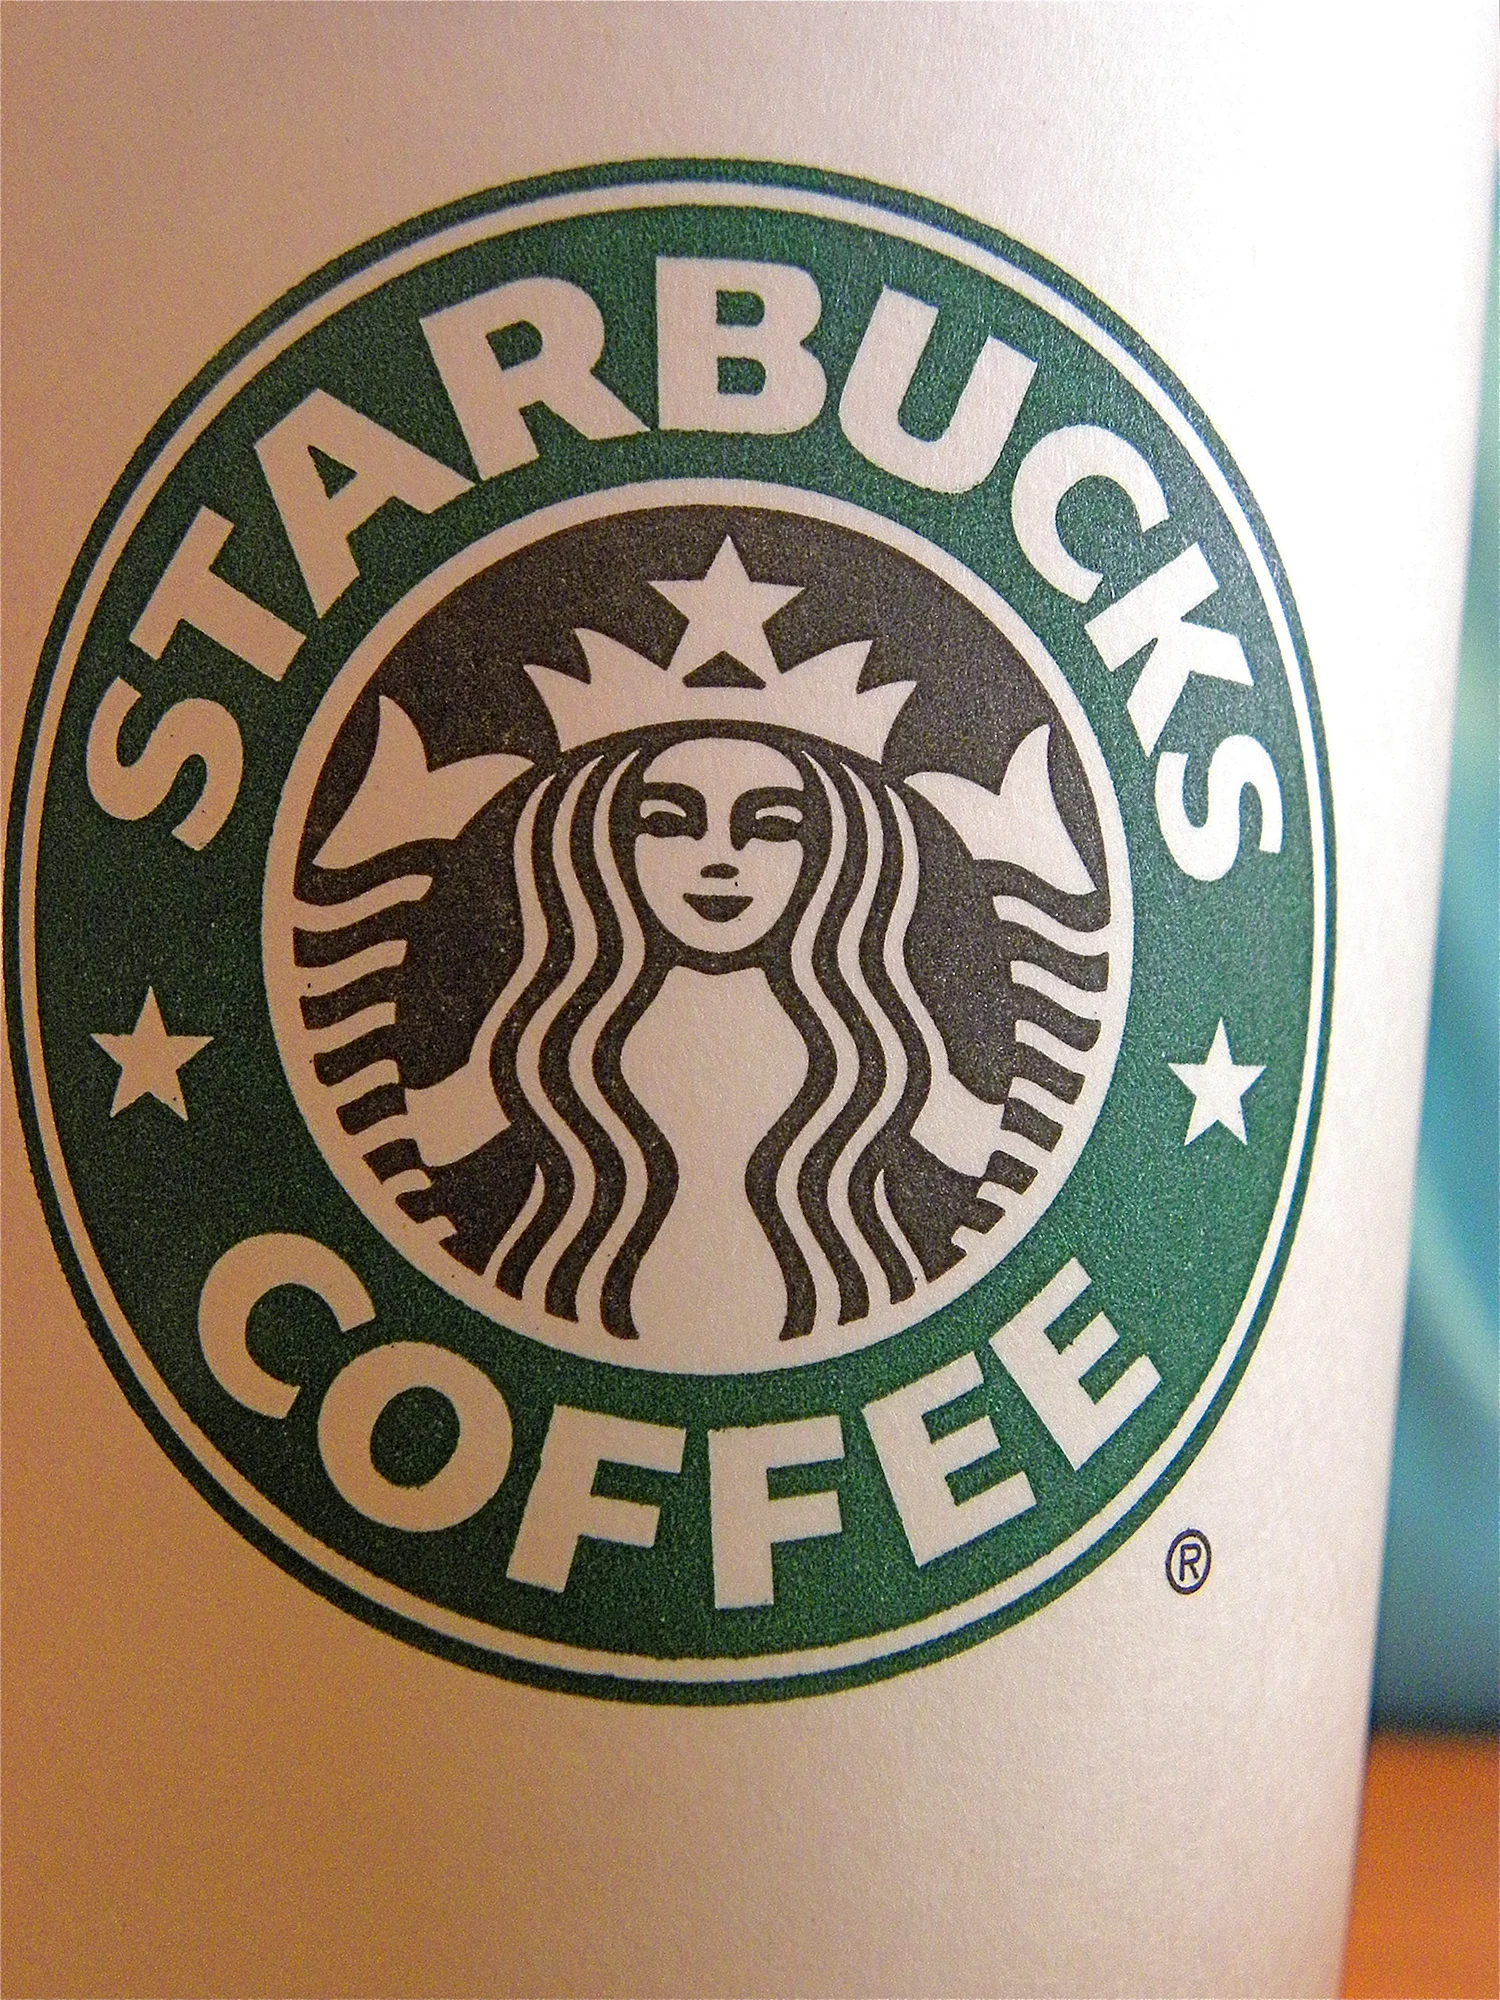 Starbucks logo 2020